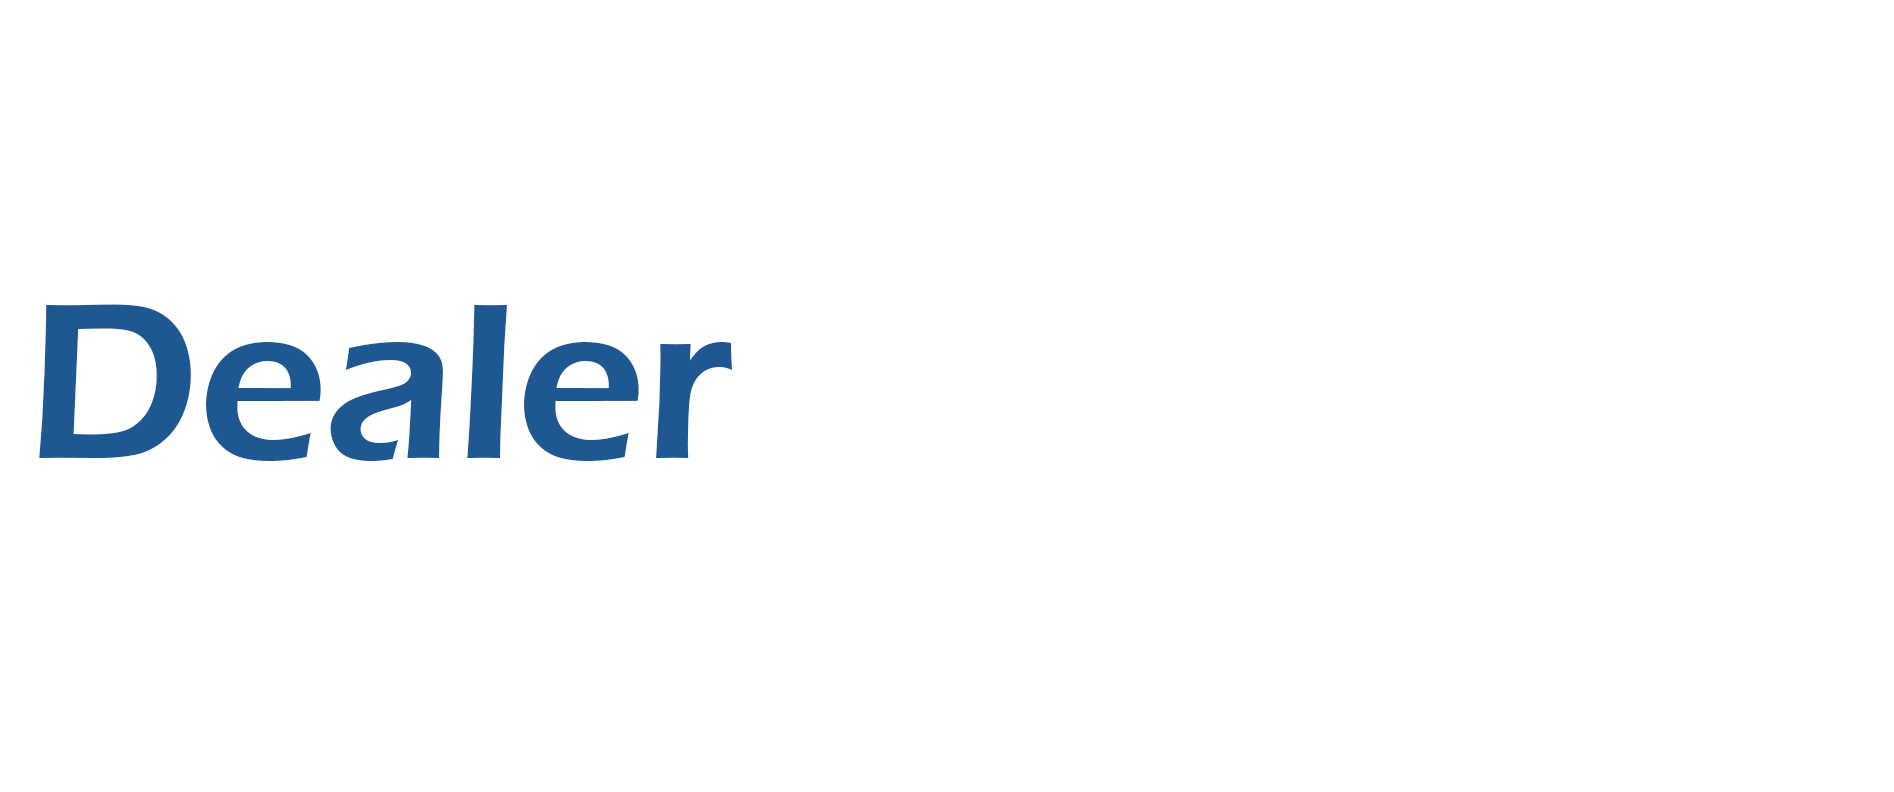 Dealer Help Desk logo